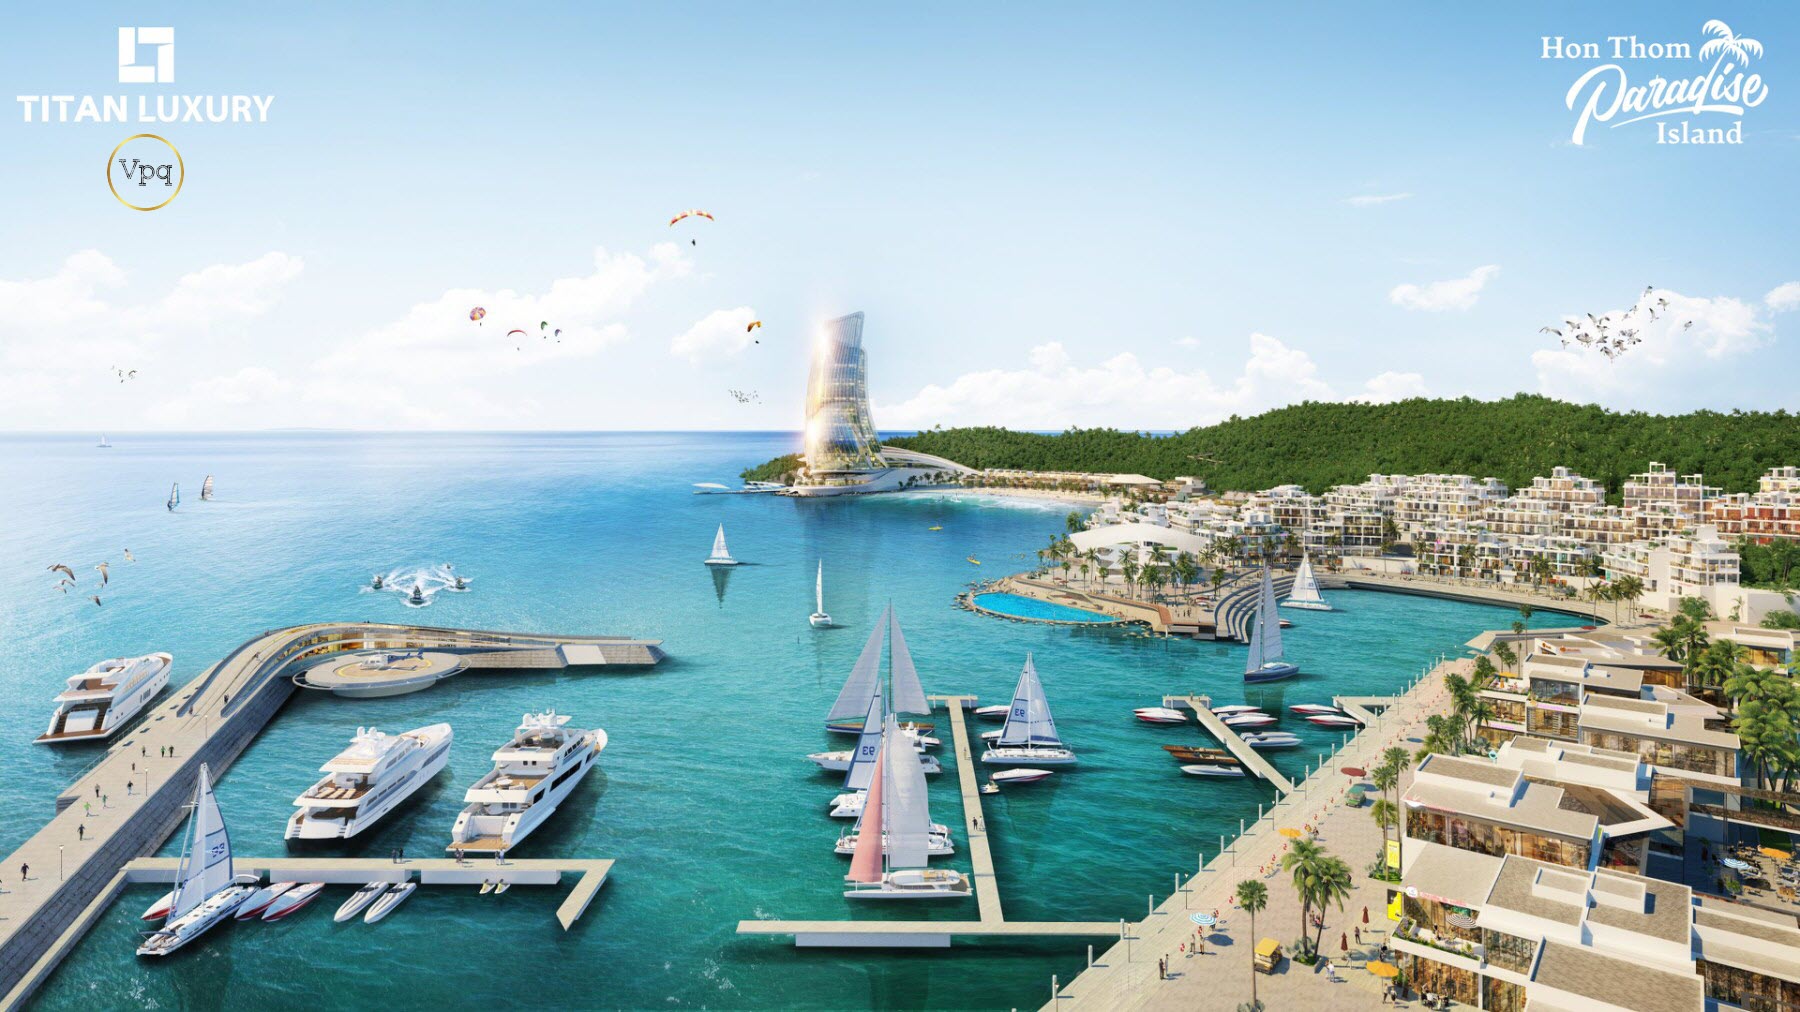 Từ vịnh du thuyền The Marina sẽ ngắm được toàn cảnh Sun Iconic Hub Hon Thom Paradise Island